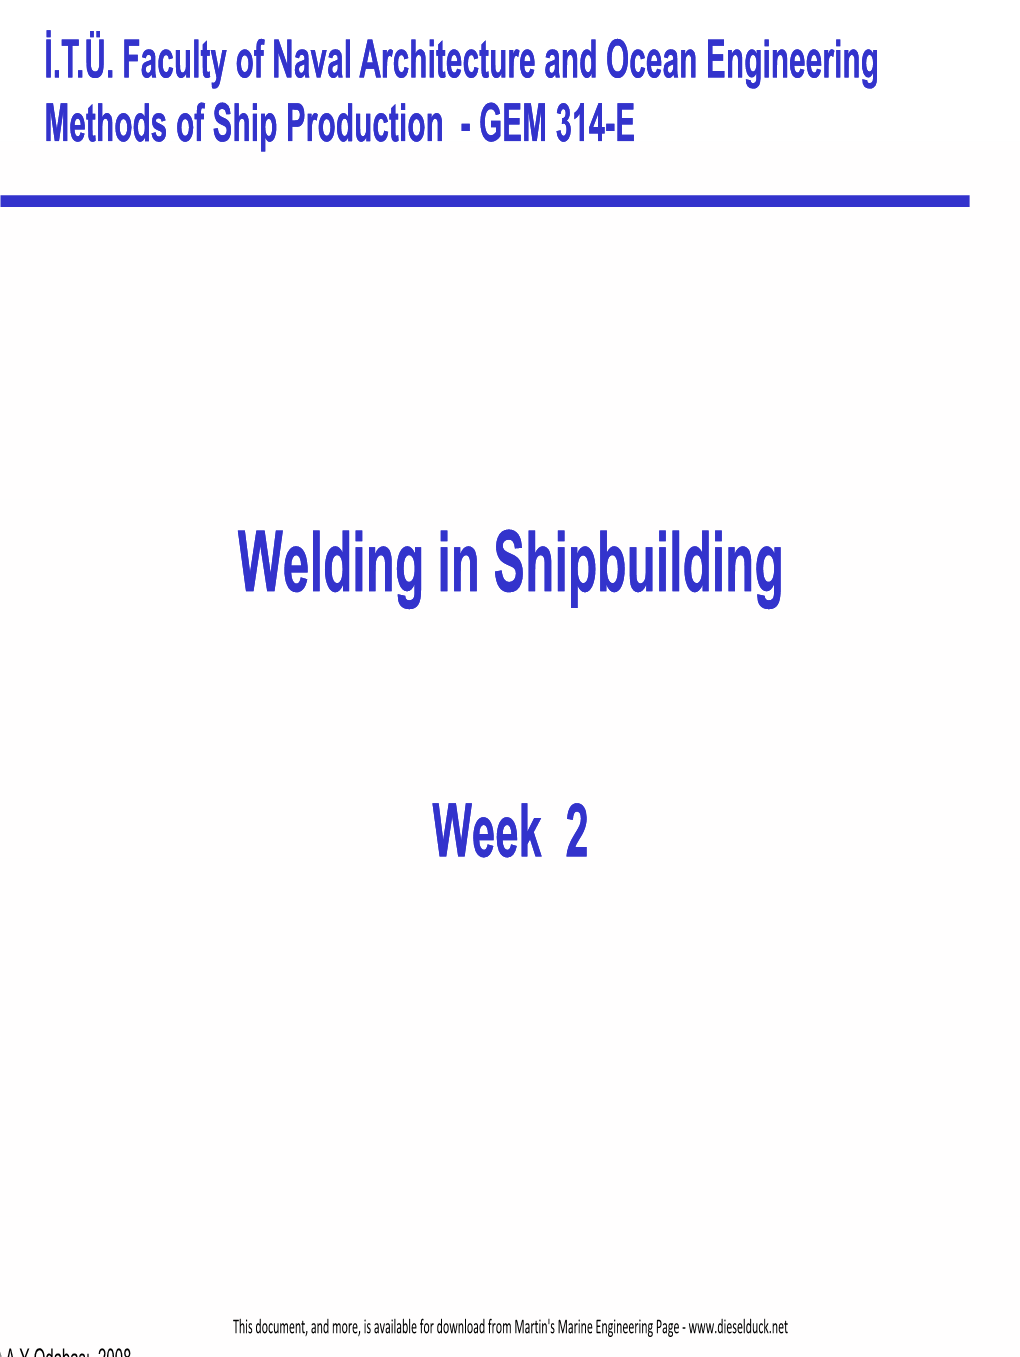 Welding in Shipbuilding